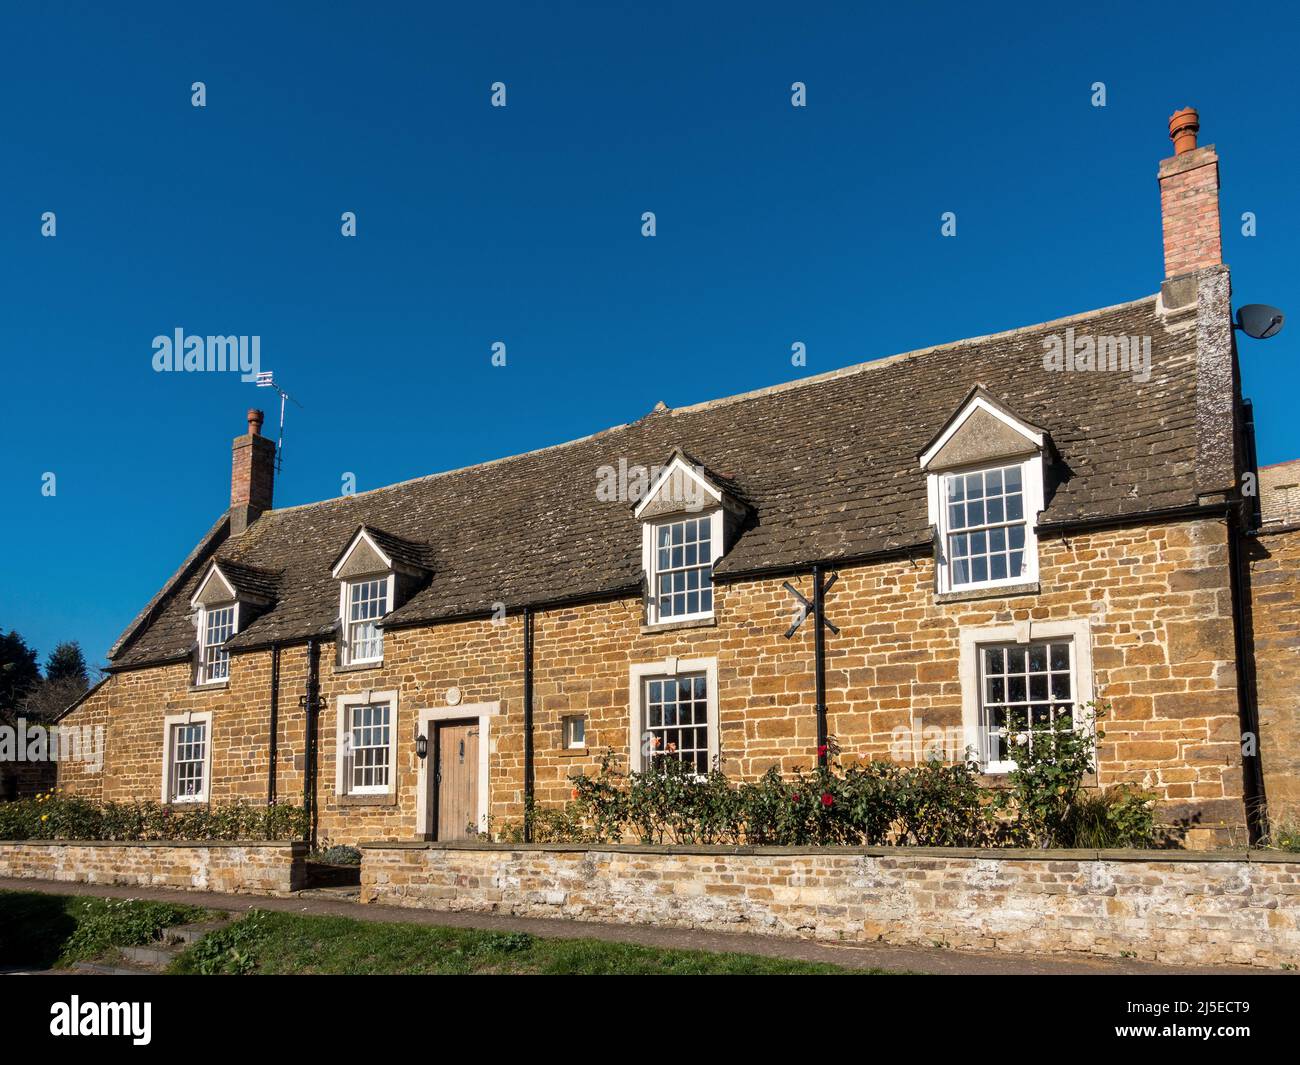 'The Cottage', une jolie maison de campagne en pierre sur South View à Uppingham avec ciel bleu clair au-dessus, Rutland, Angleterre, Royaume-Uni. Banque D'Images